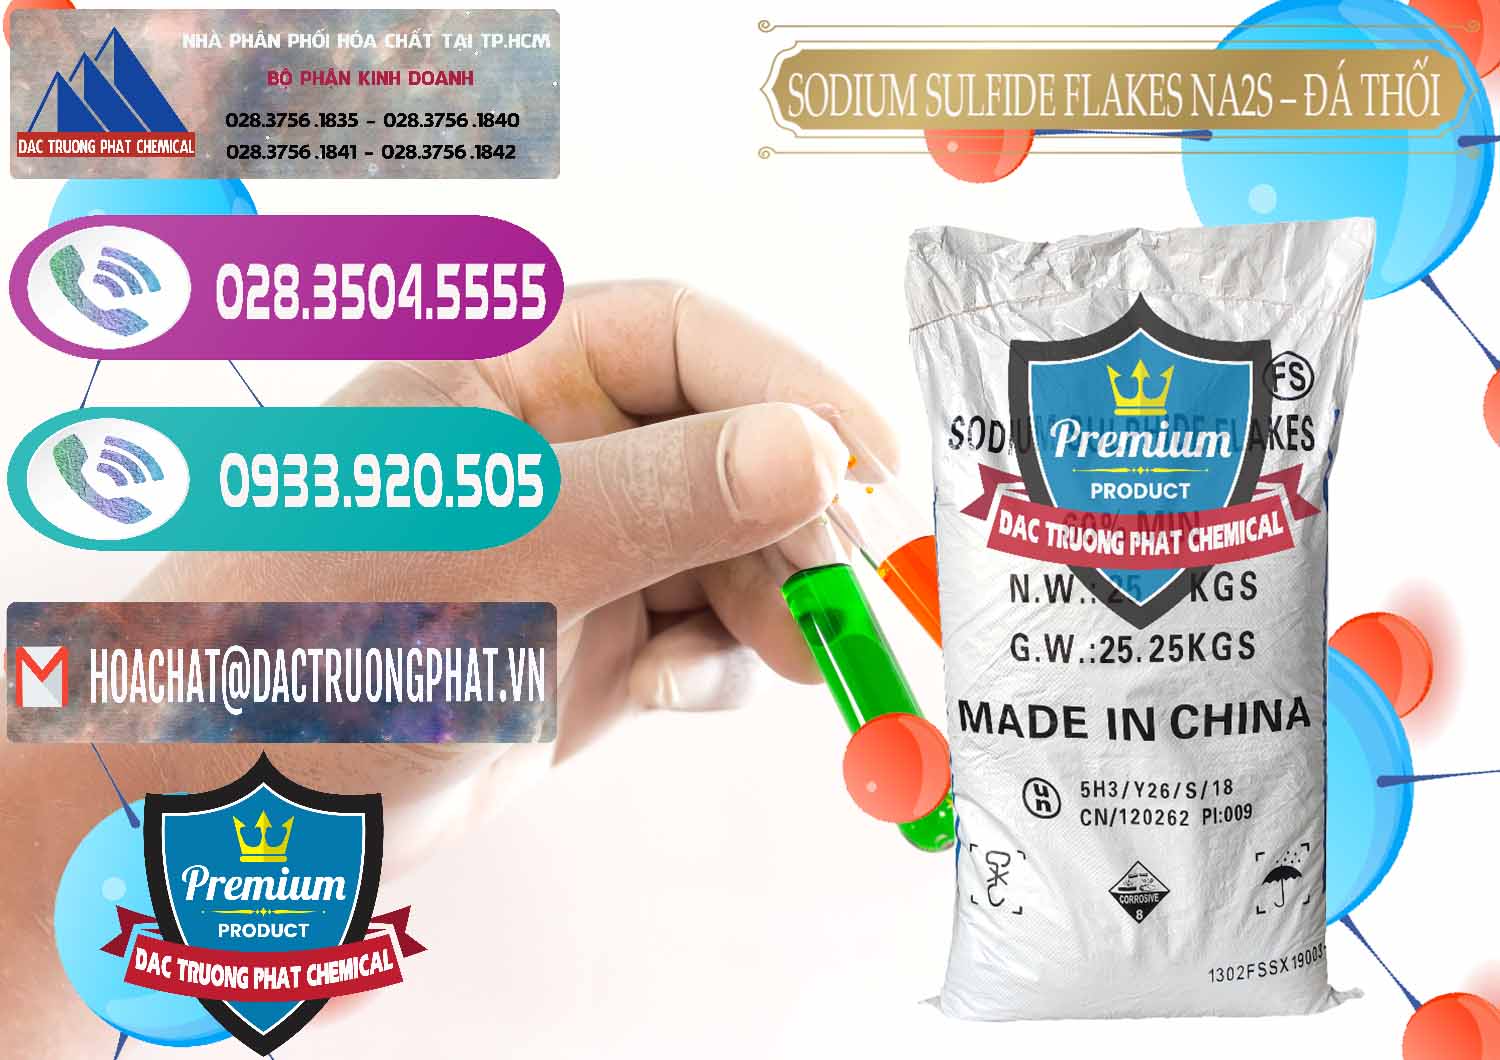 Cty chuyên cung cấp và bán Sodium Sulfide Flakes NA2S – Đá Thối Đỏ Trung Quốc China - 0150 - Nơi chuyên cung ứng ( phân phối ) hóa chất tại TP.HCM - hoachatxulynuoc.com